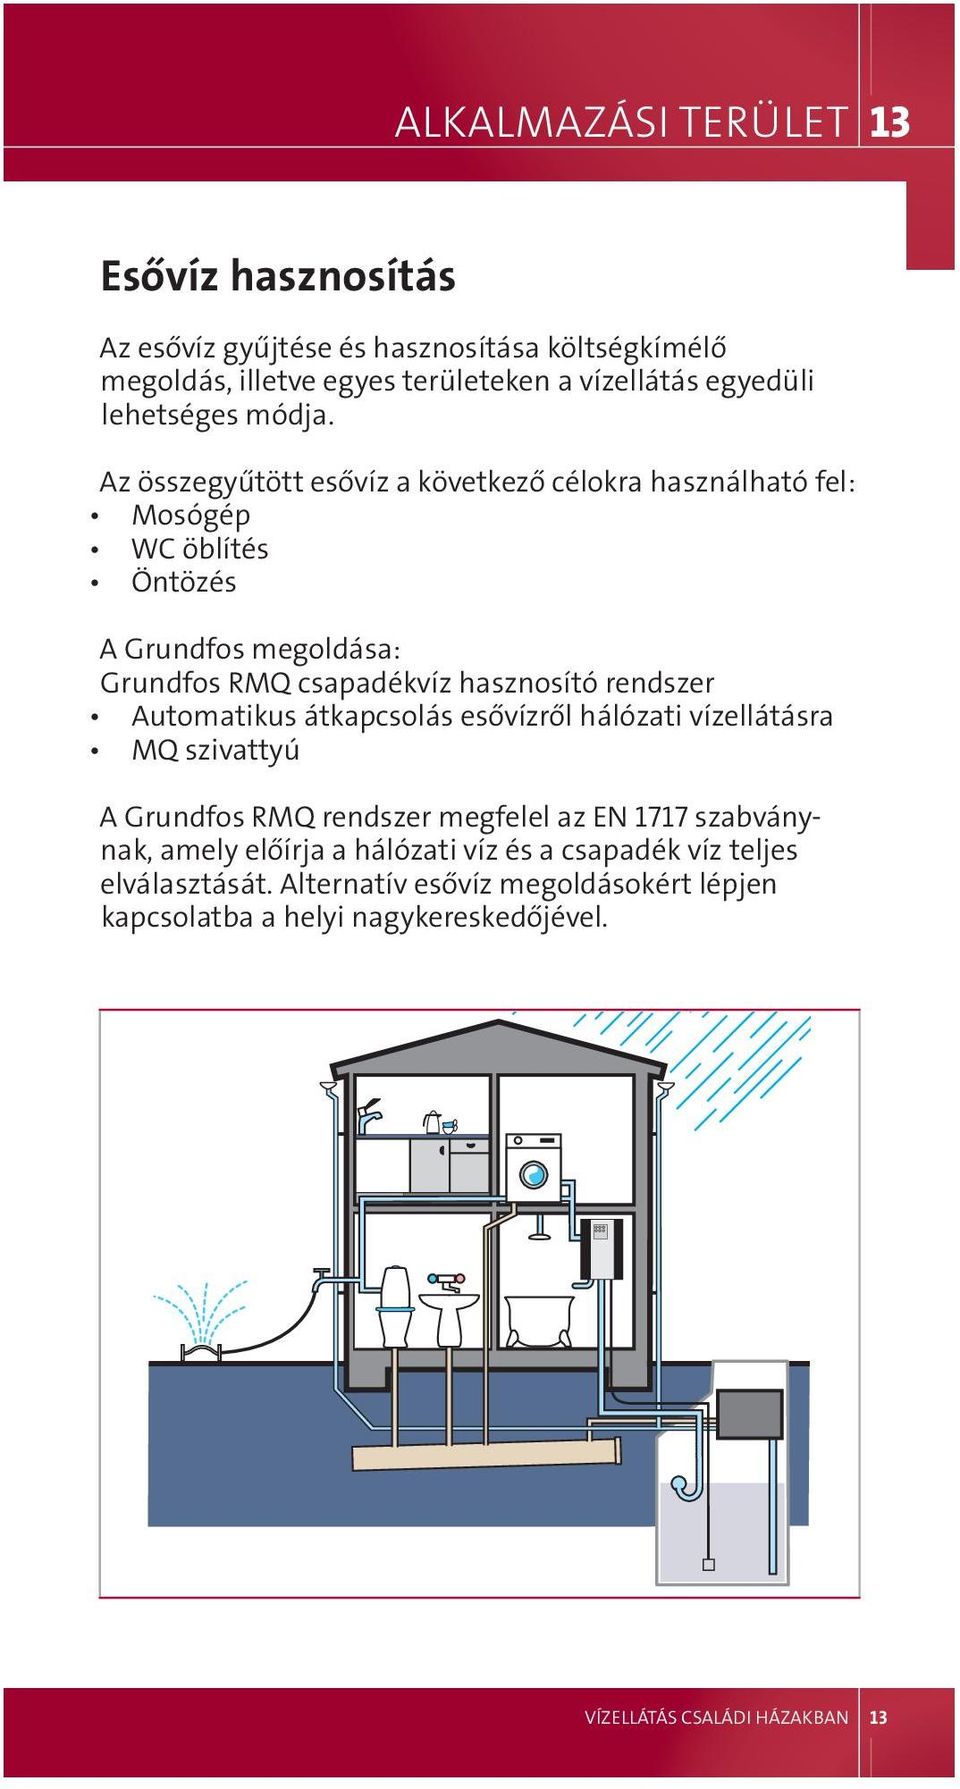 Az összegyűtött esővíz a következő célokra használható fel: mosógép Wc öblítés Öntözés A Grundfos megoldása: Grundfos rmq csapadékvíz hasznosító rendszer